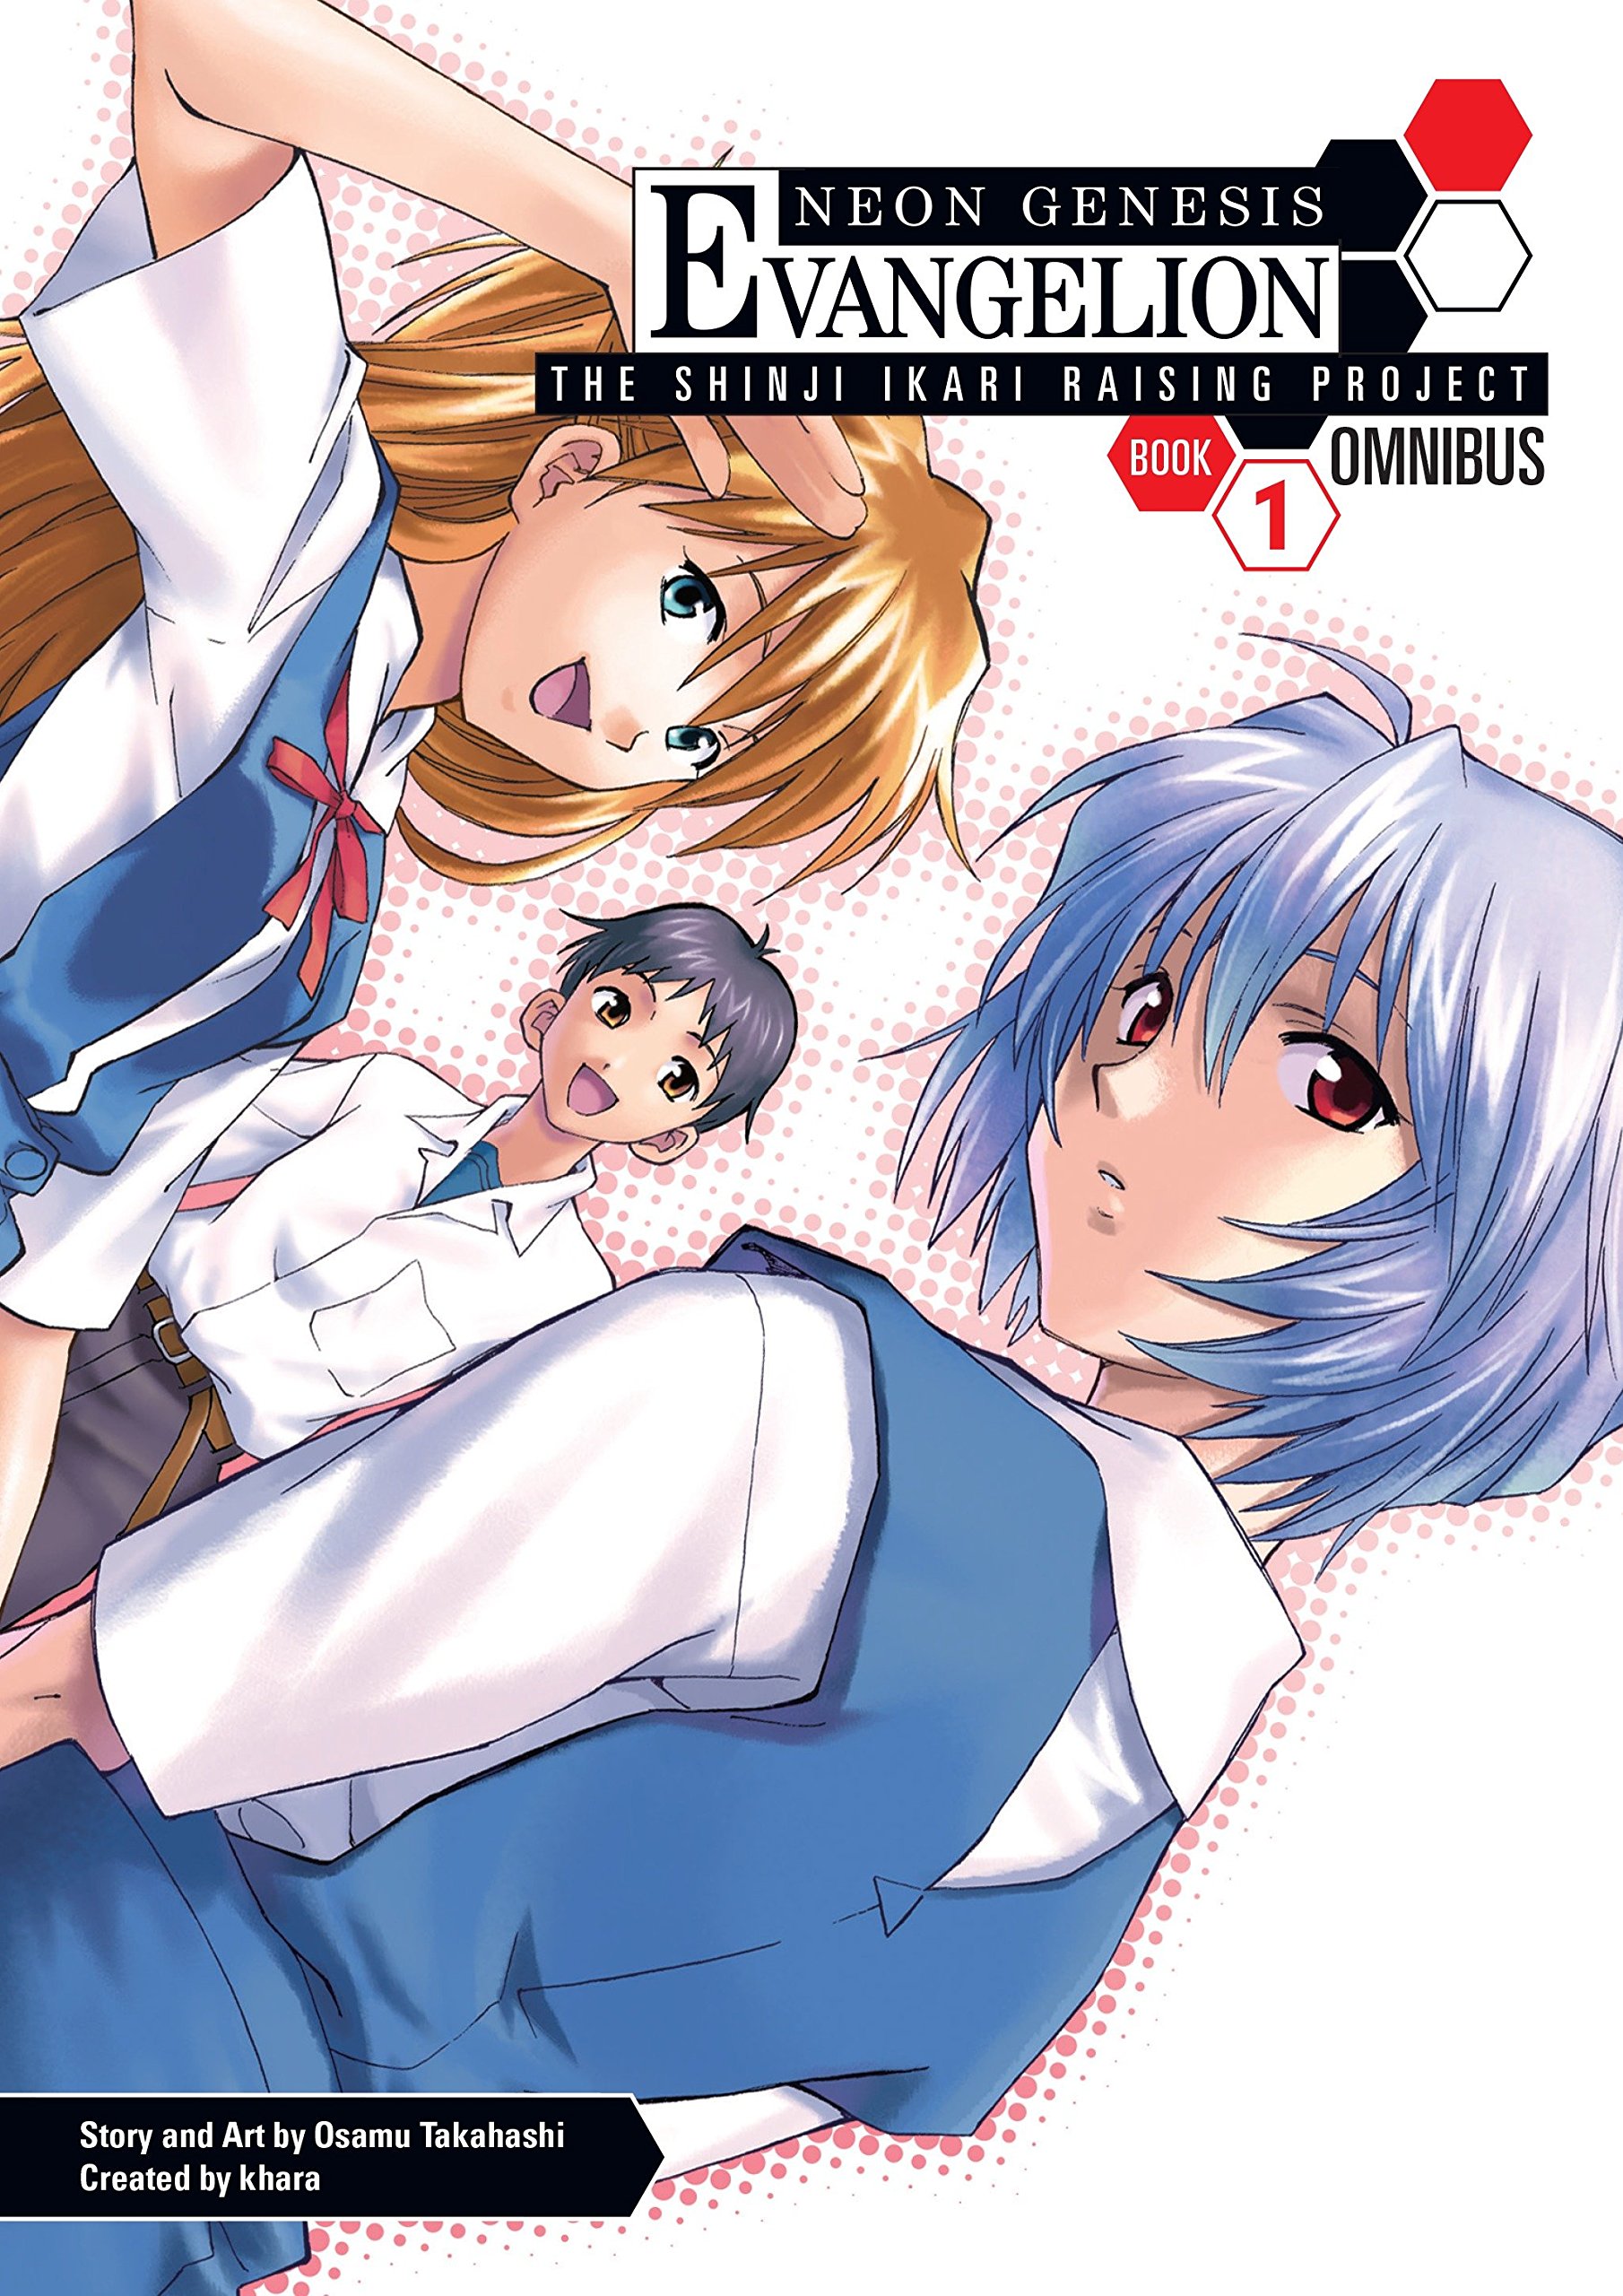 Neon Genesis Evangelion: The Shinji Ikari Raising Project Omnibus Manga Volume 1